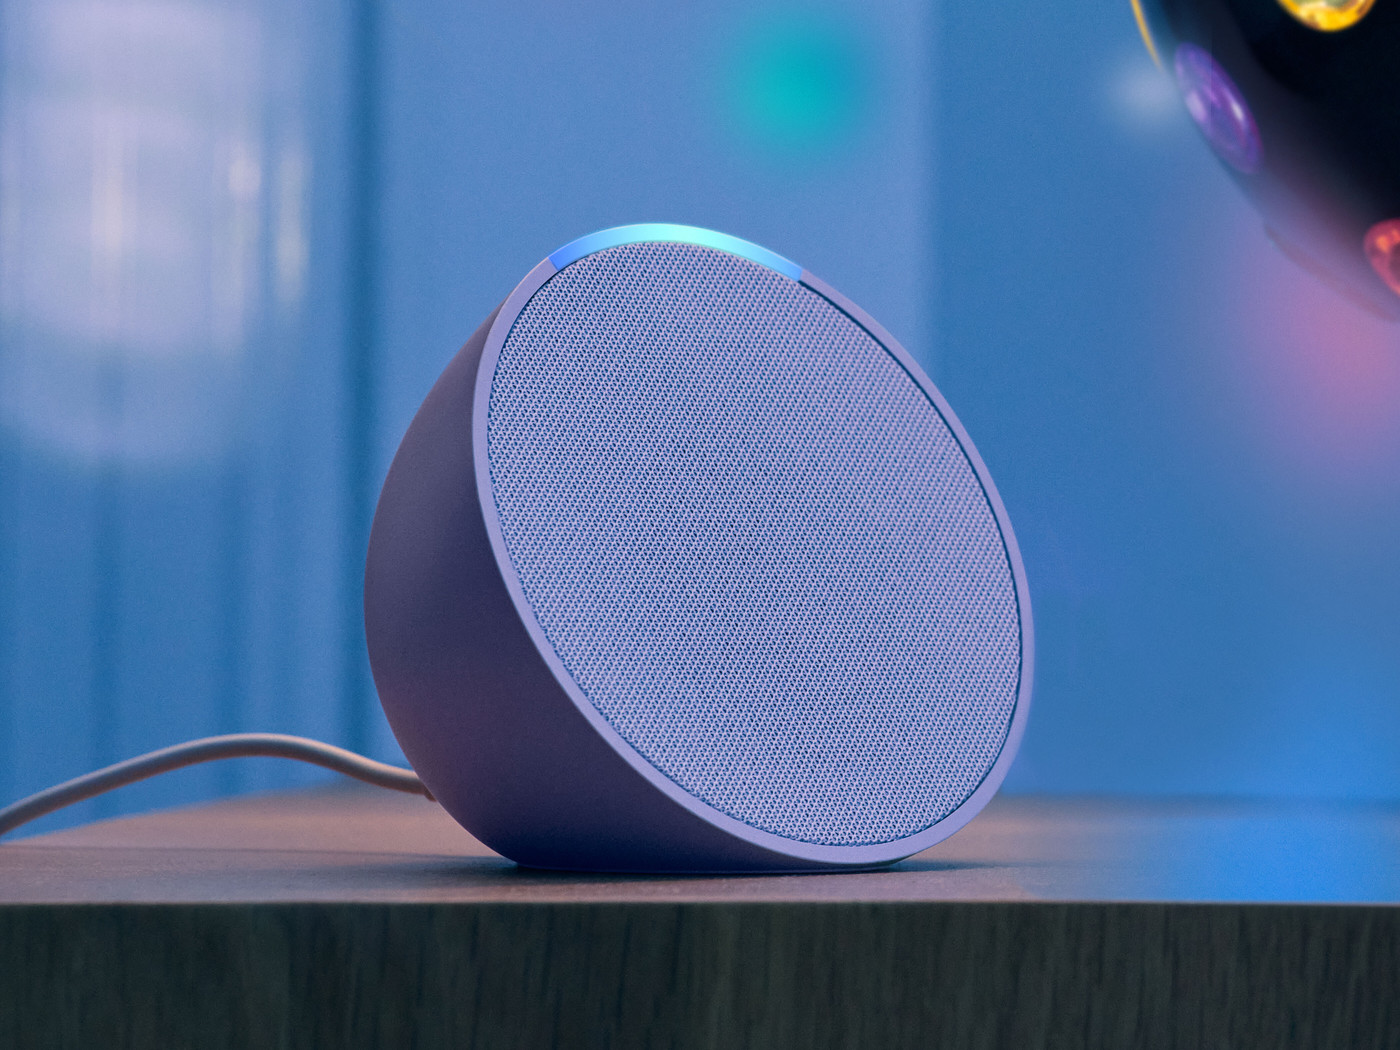 Amazon Echo Pop slimme luidspreker met Alexa-ondersteuning gaat in de verkoop